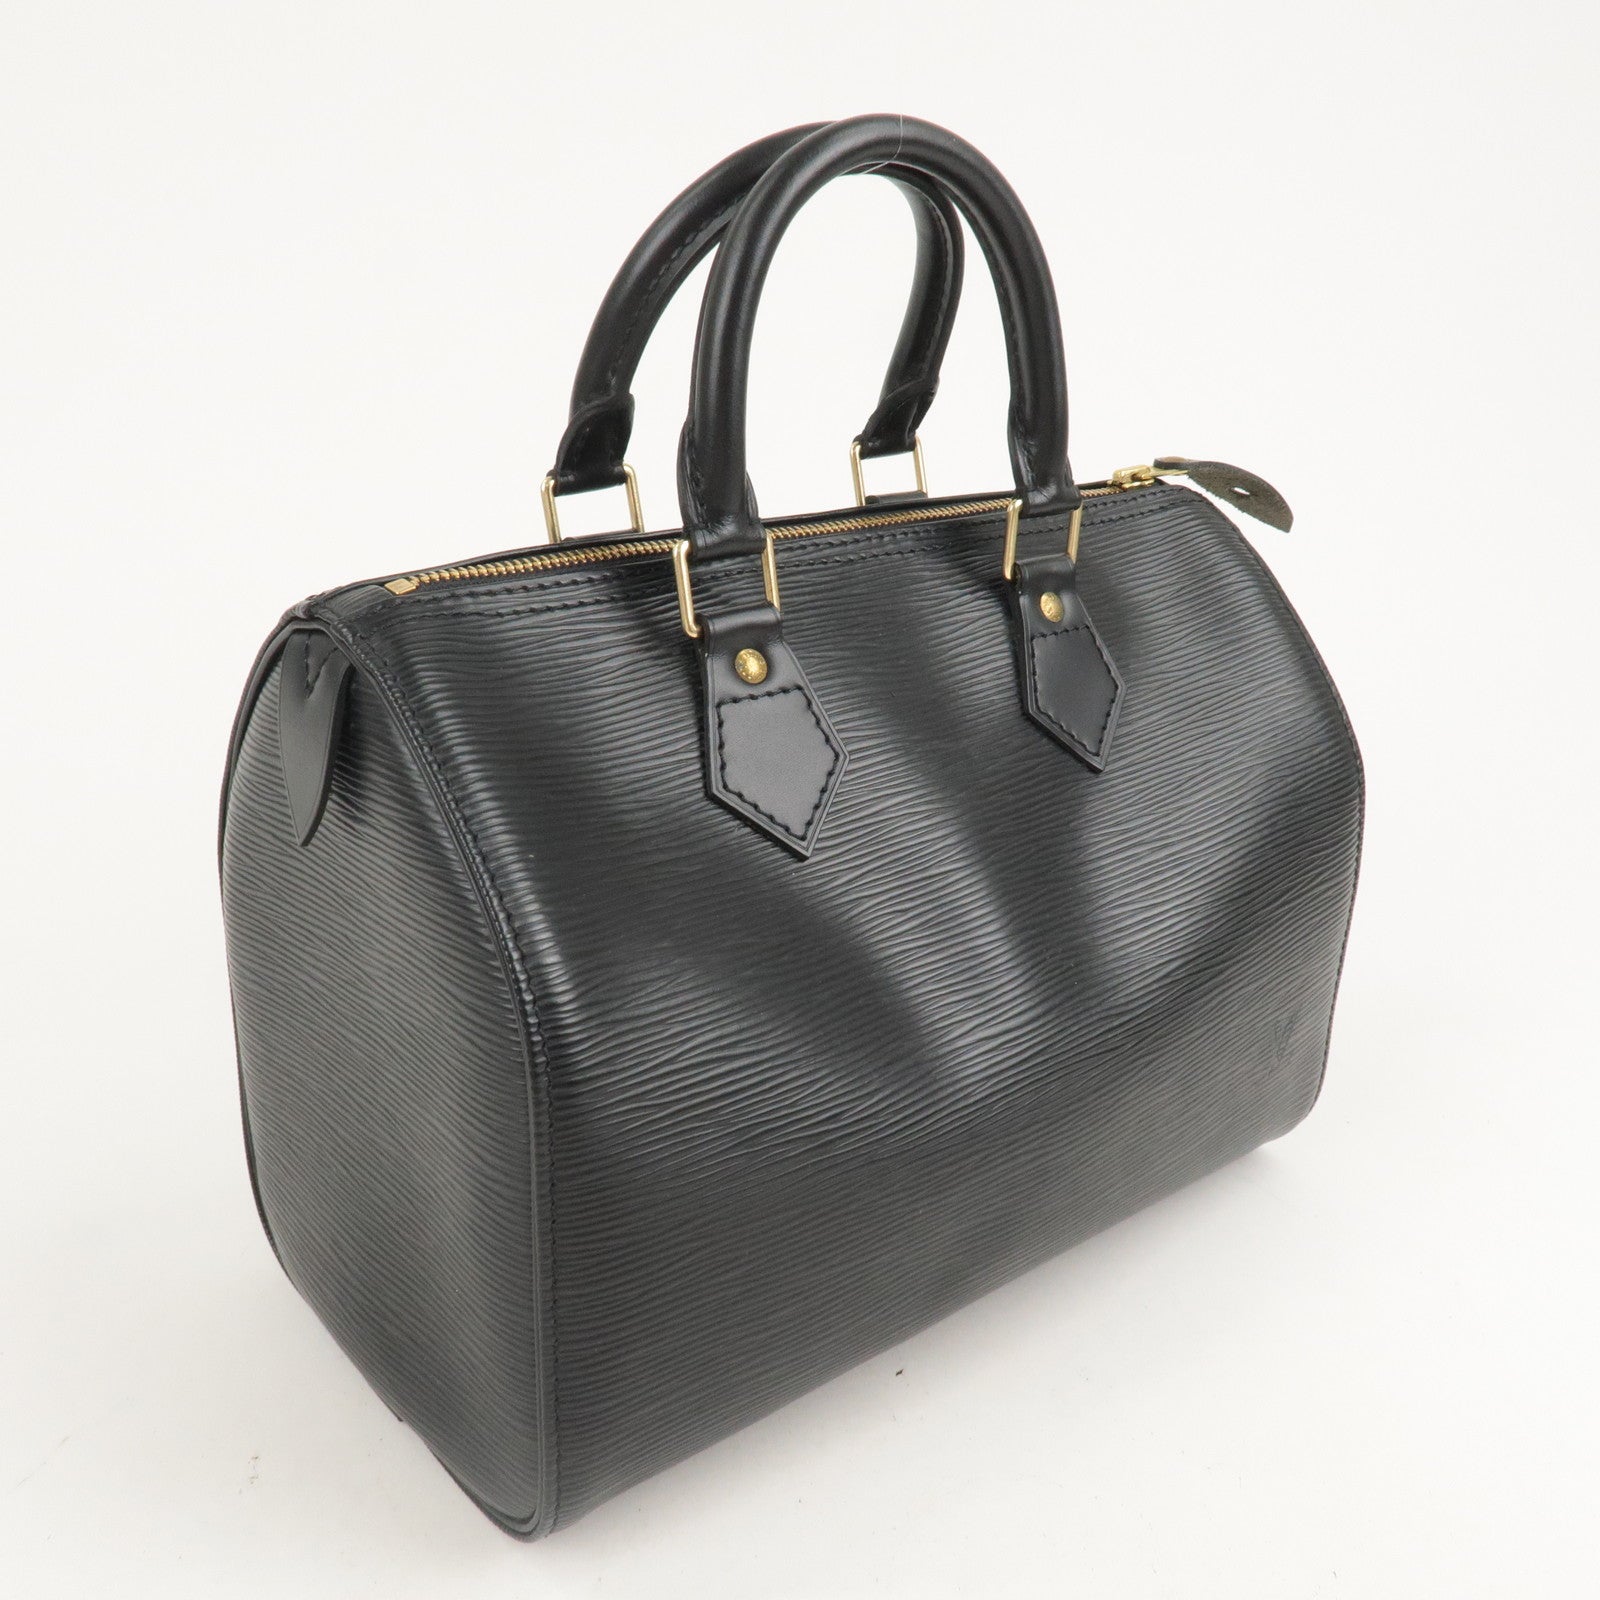 Louis Vuitton Louis Vuitton Epi Speedy 30 Handbag Boston Bag Noir